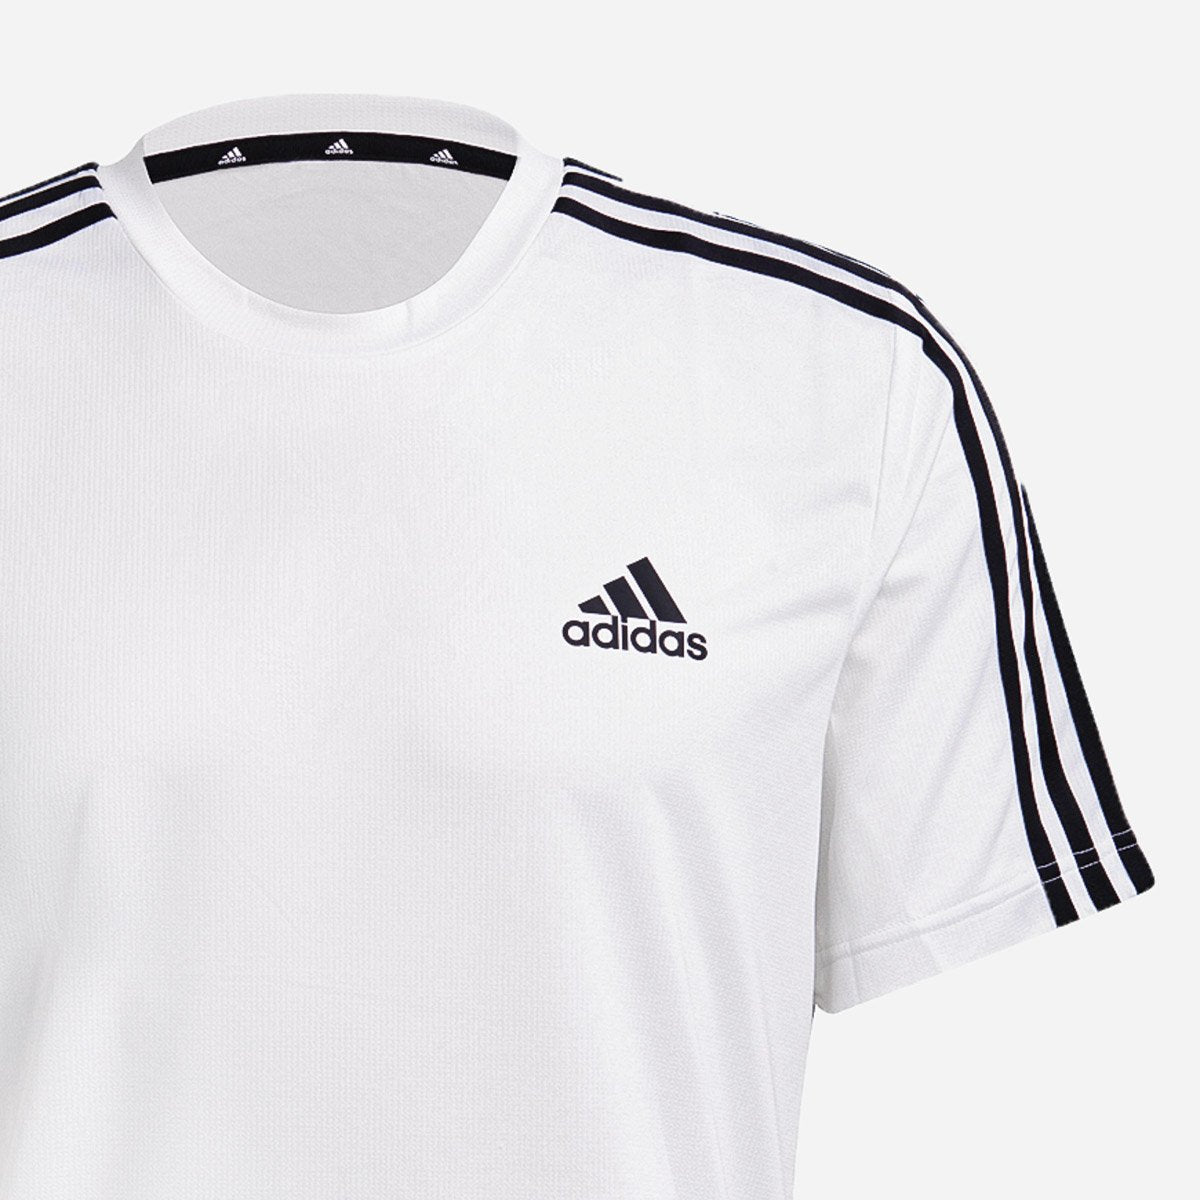 Adidas To in Sport Move AEROREADY White Tee Men\'s 3-Stripes Designed